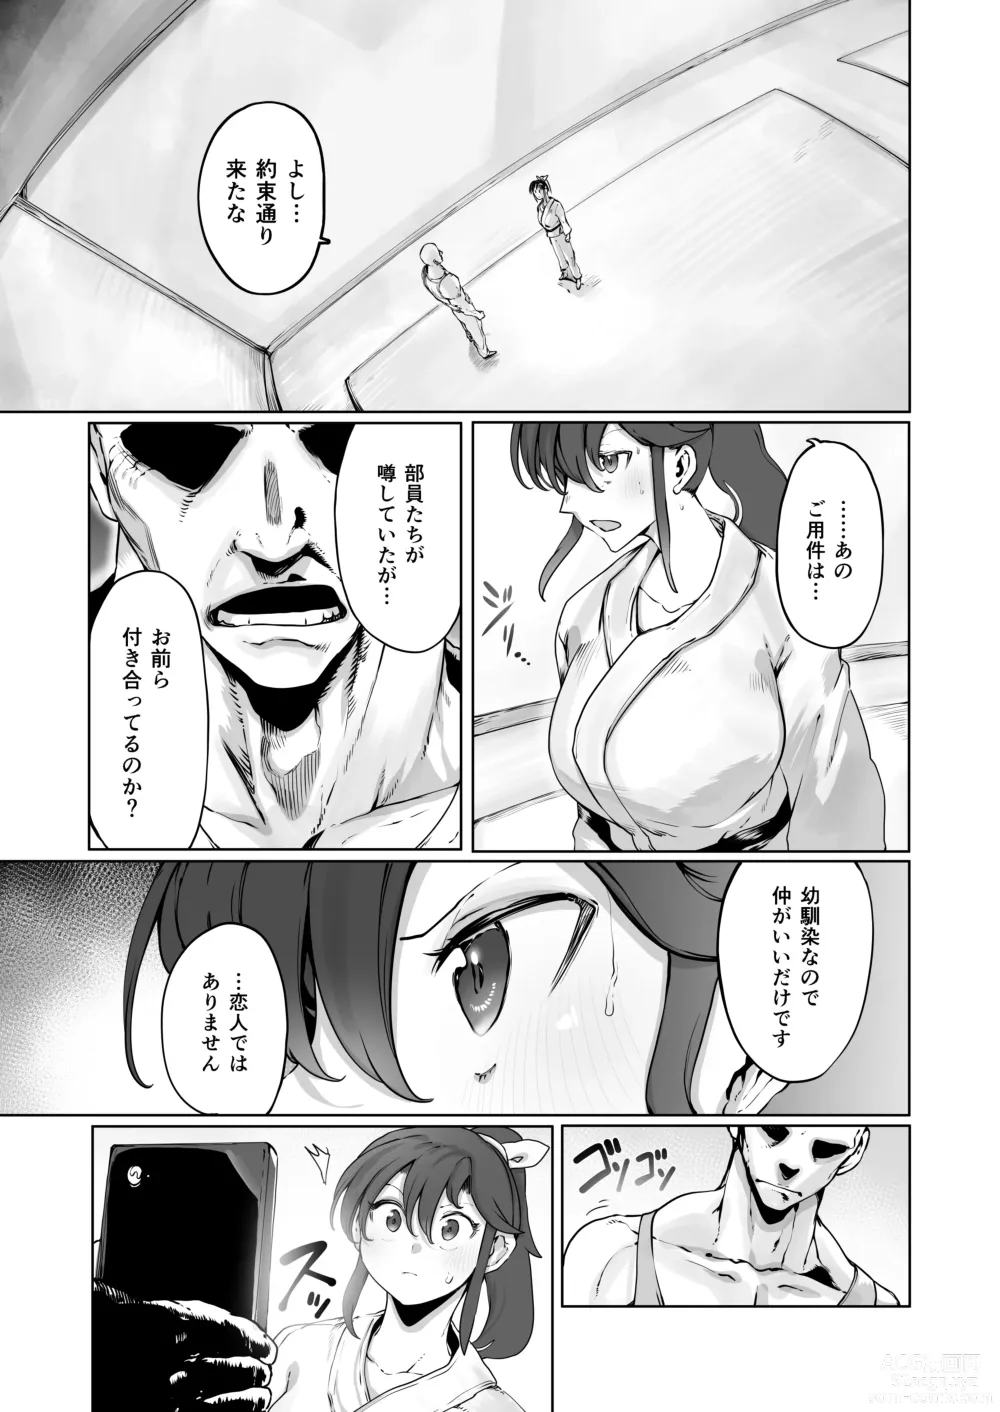 Page 8 of doujinshi Yozora no Tsuki ga Ochiru made